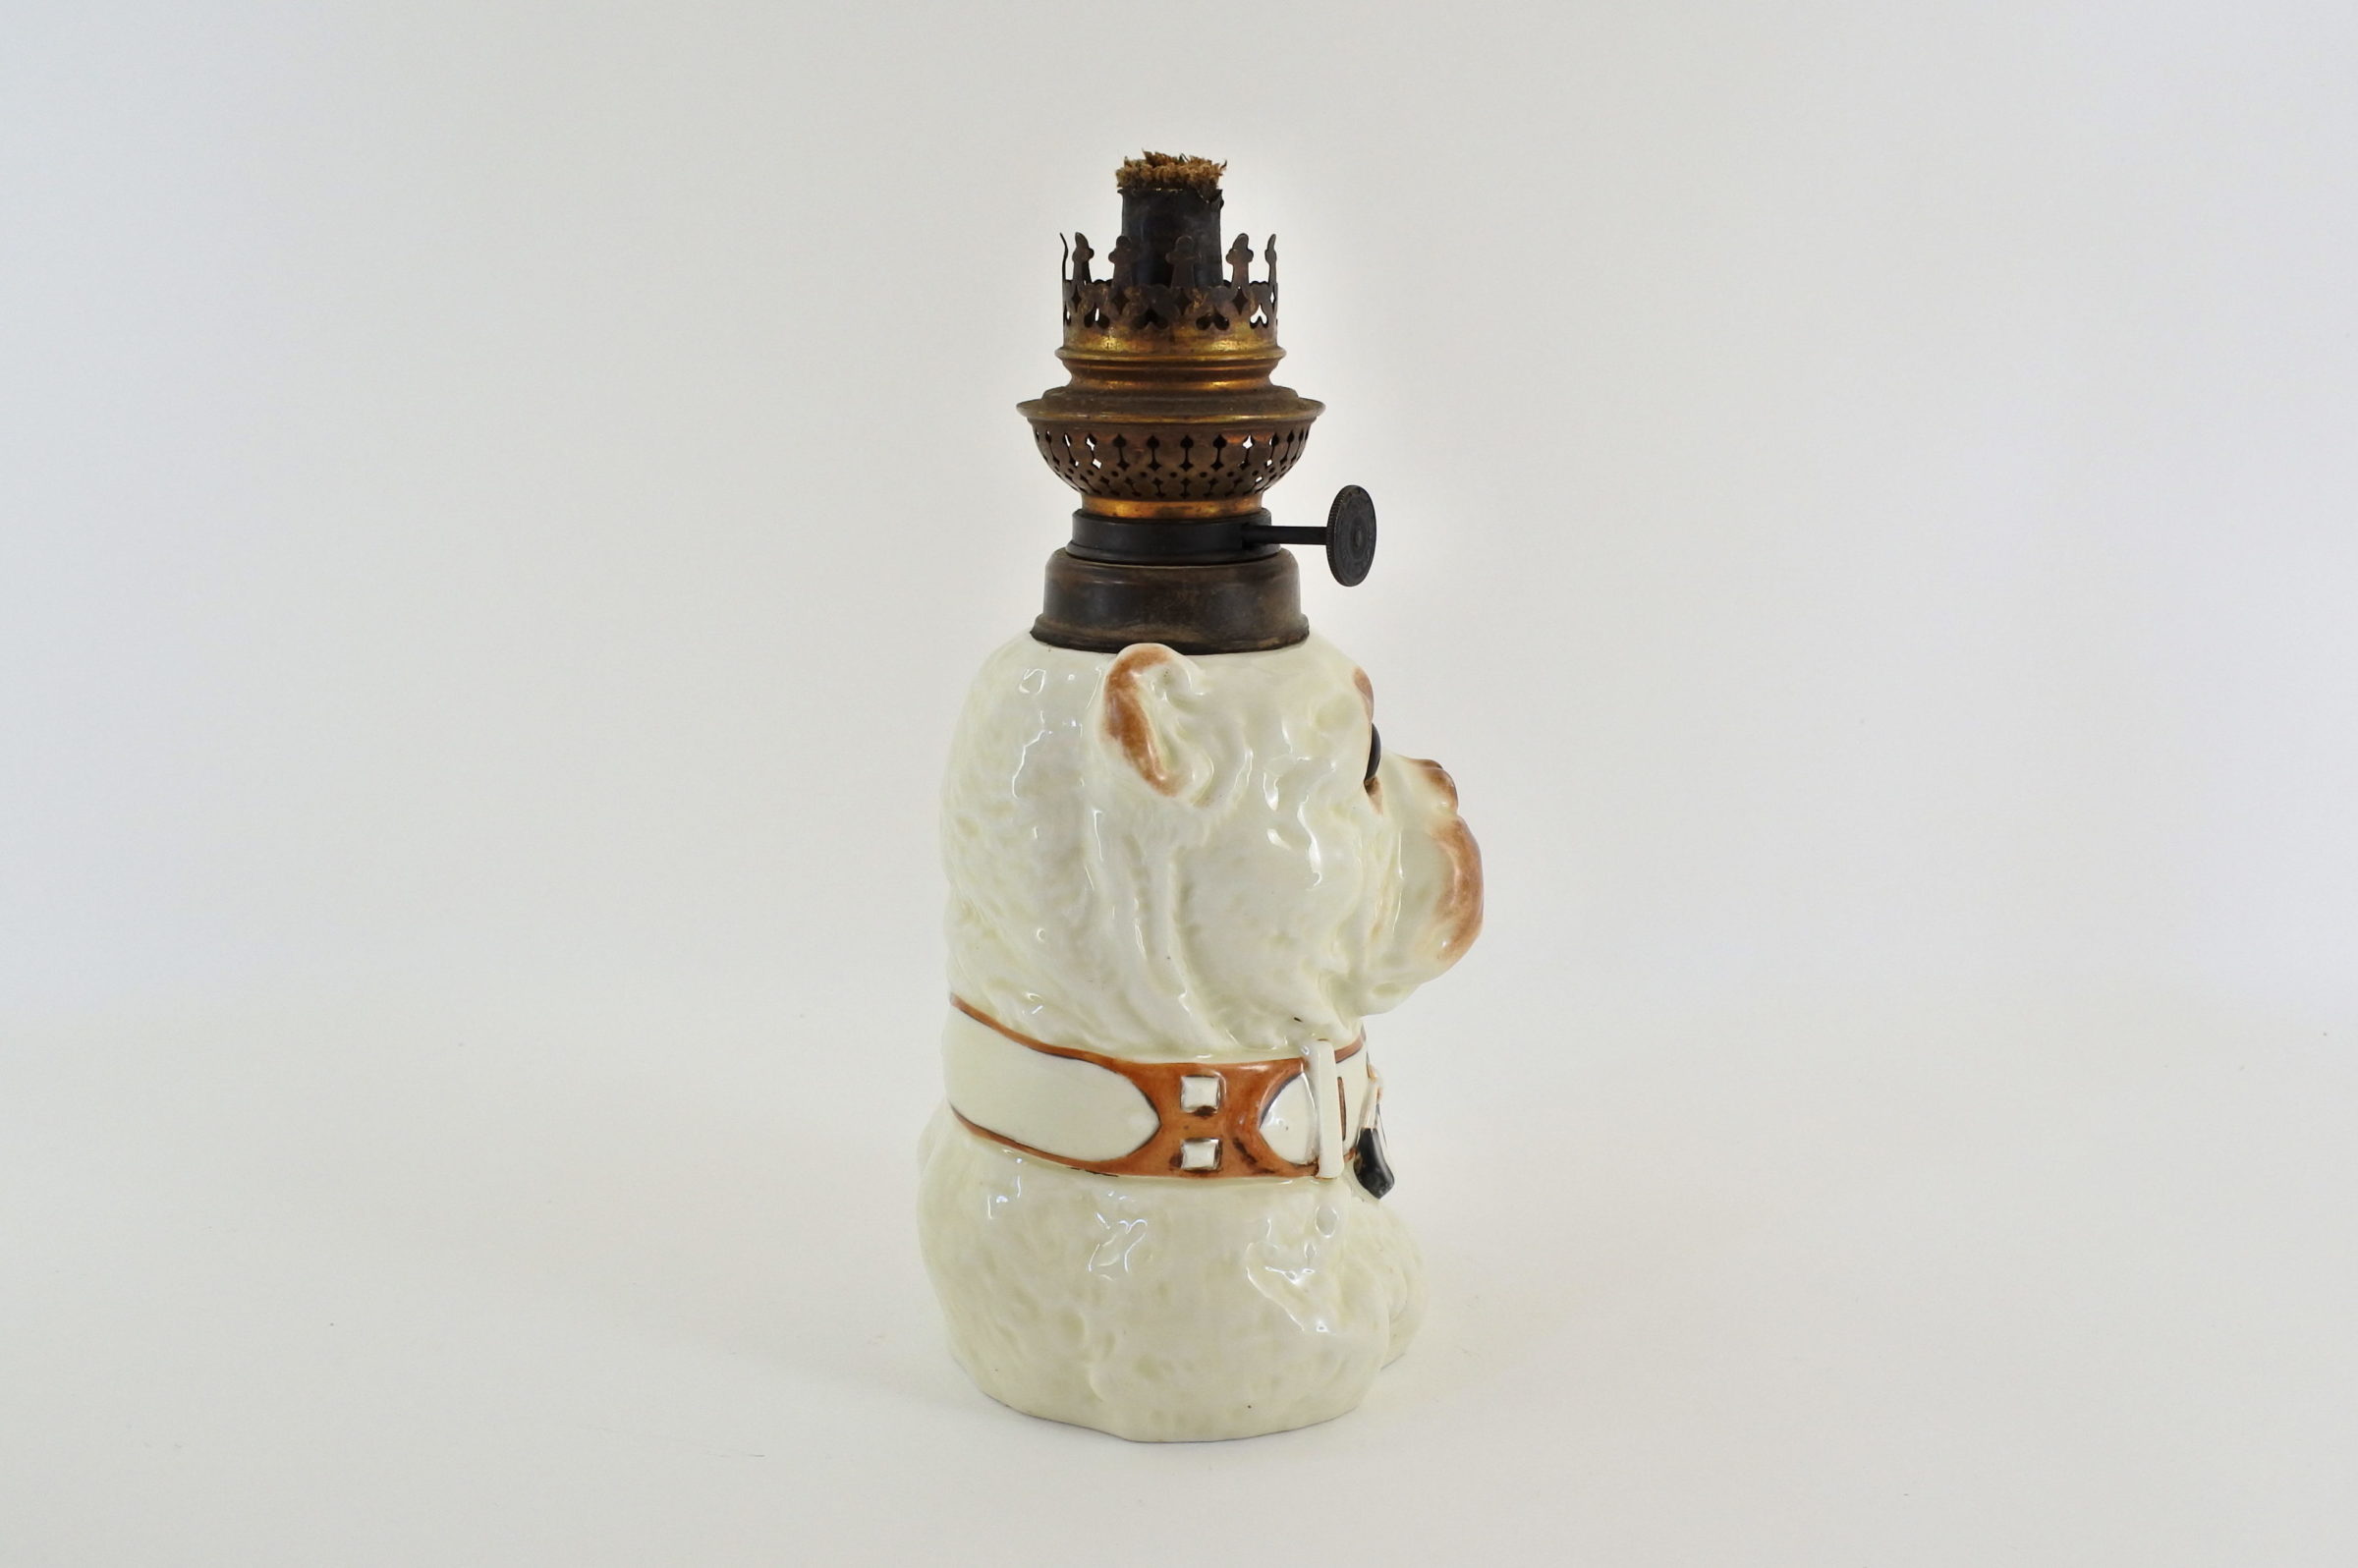 Lume a petrolio in ceramica barbotine a forma di cane bulldog - 4